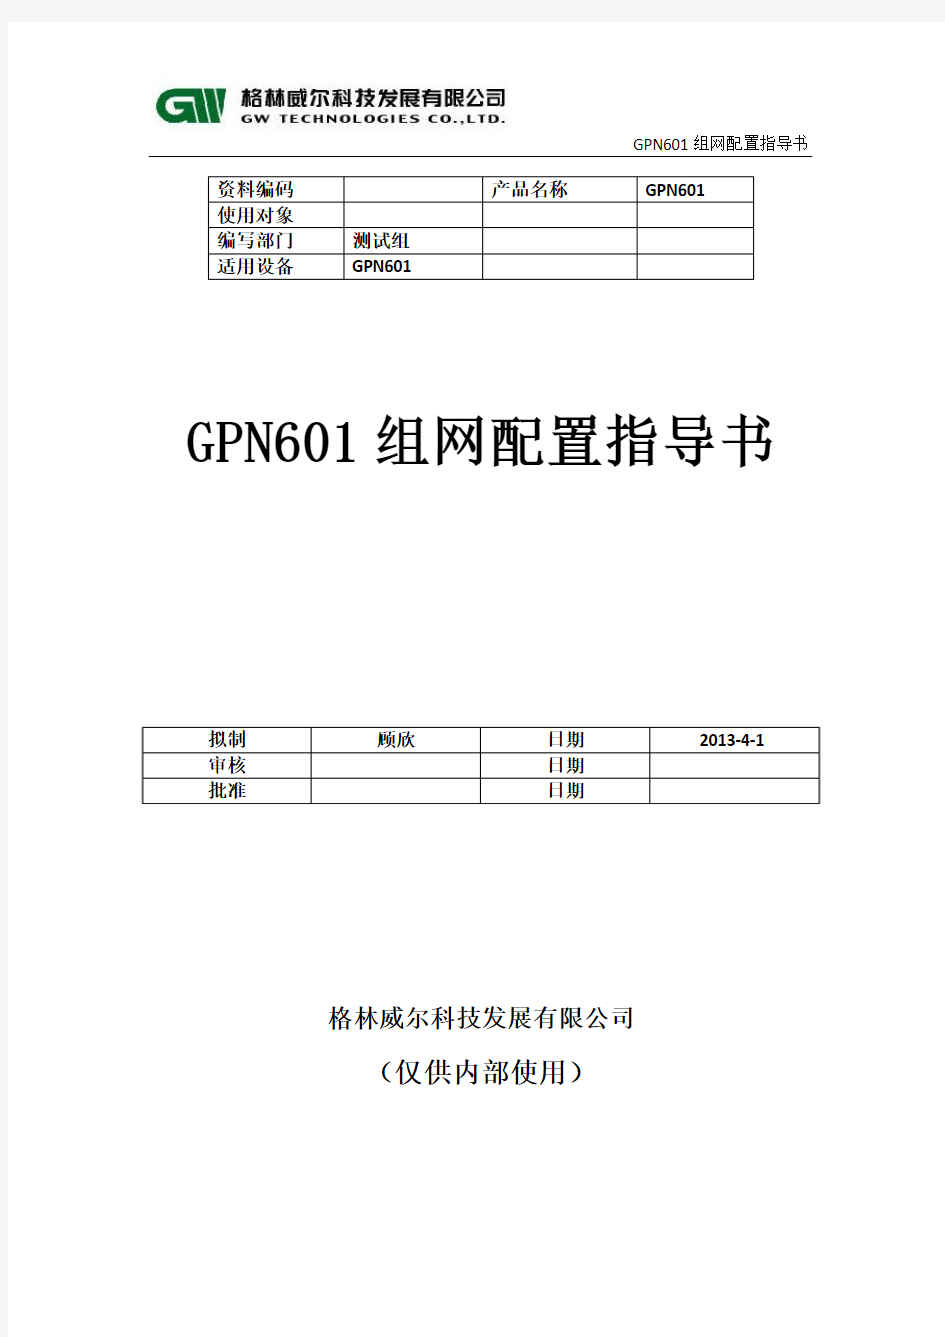 GPN601组网配置指导书..